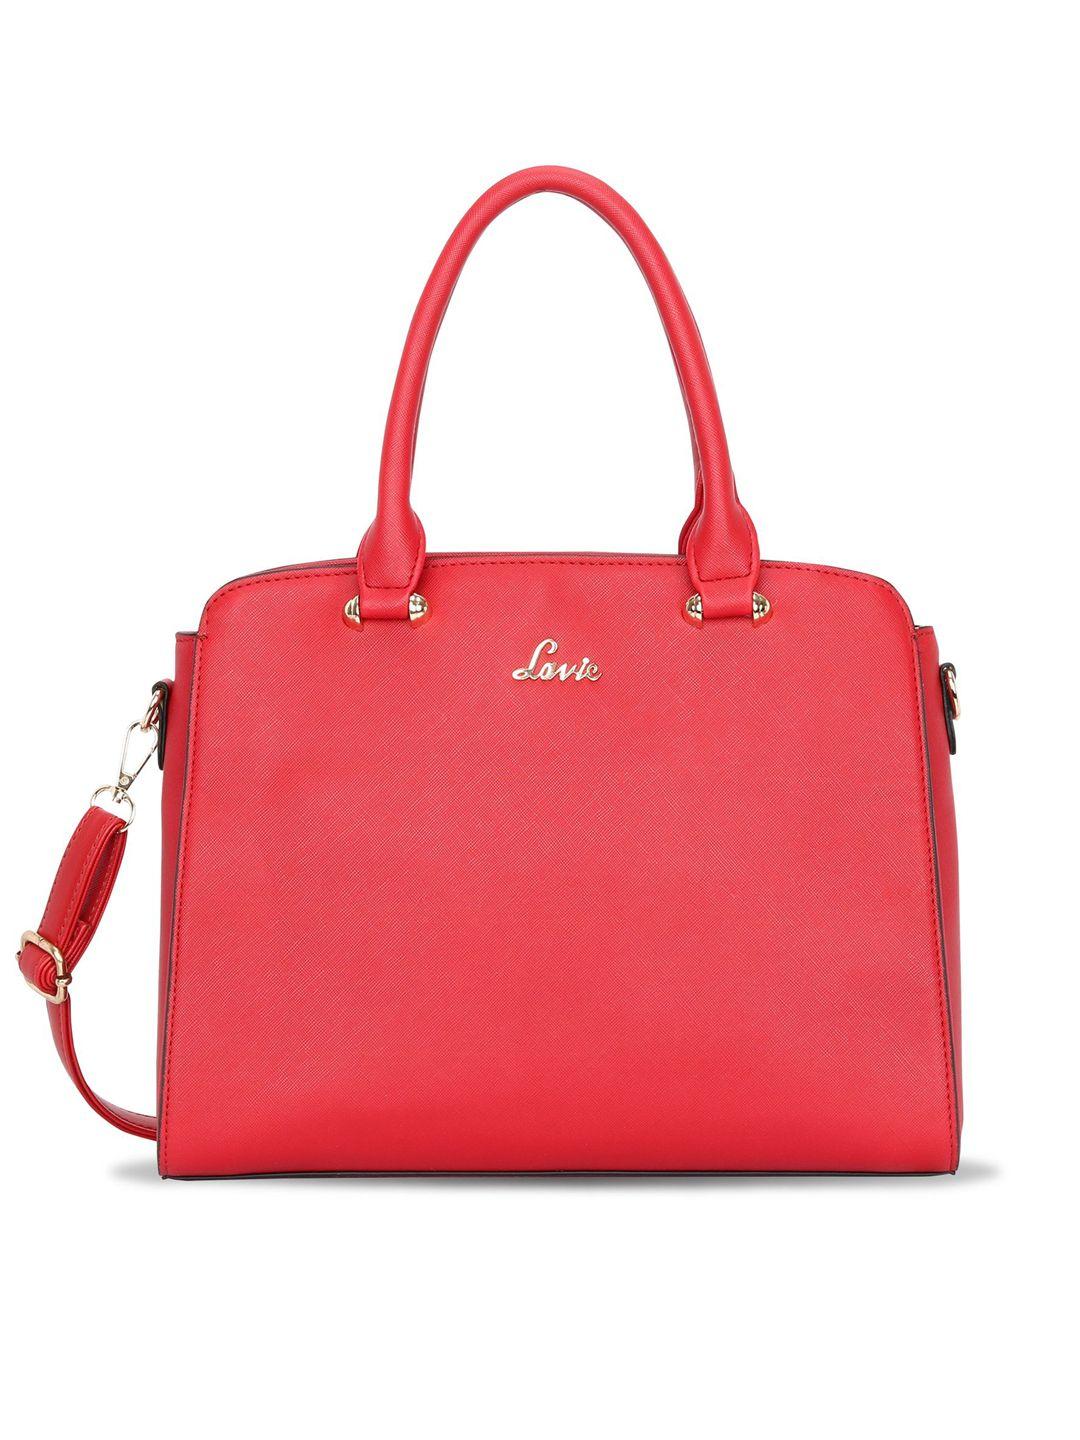 lavie women red saffiano textured structured handheld bag